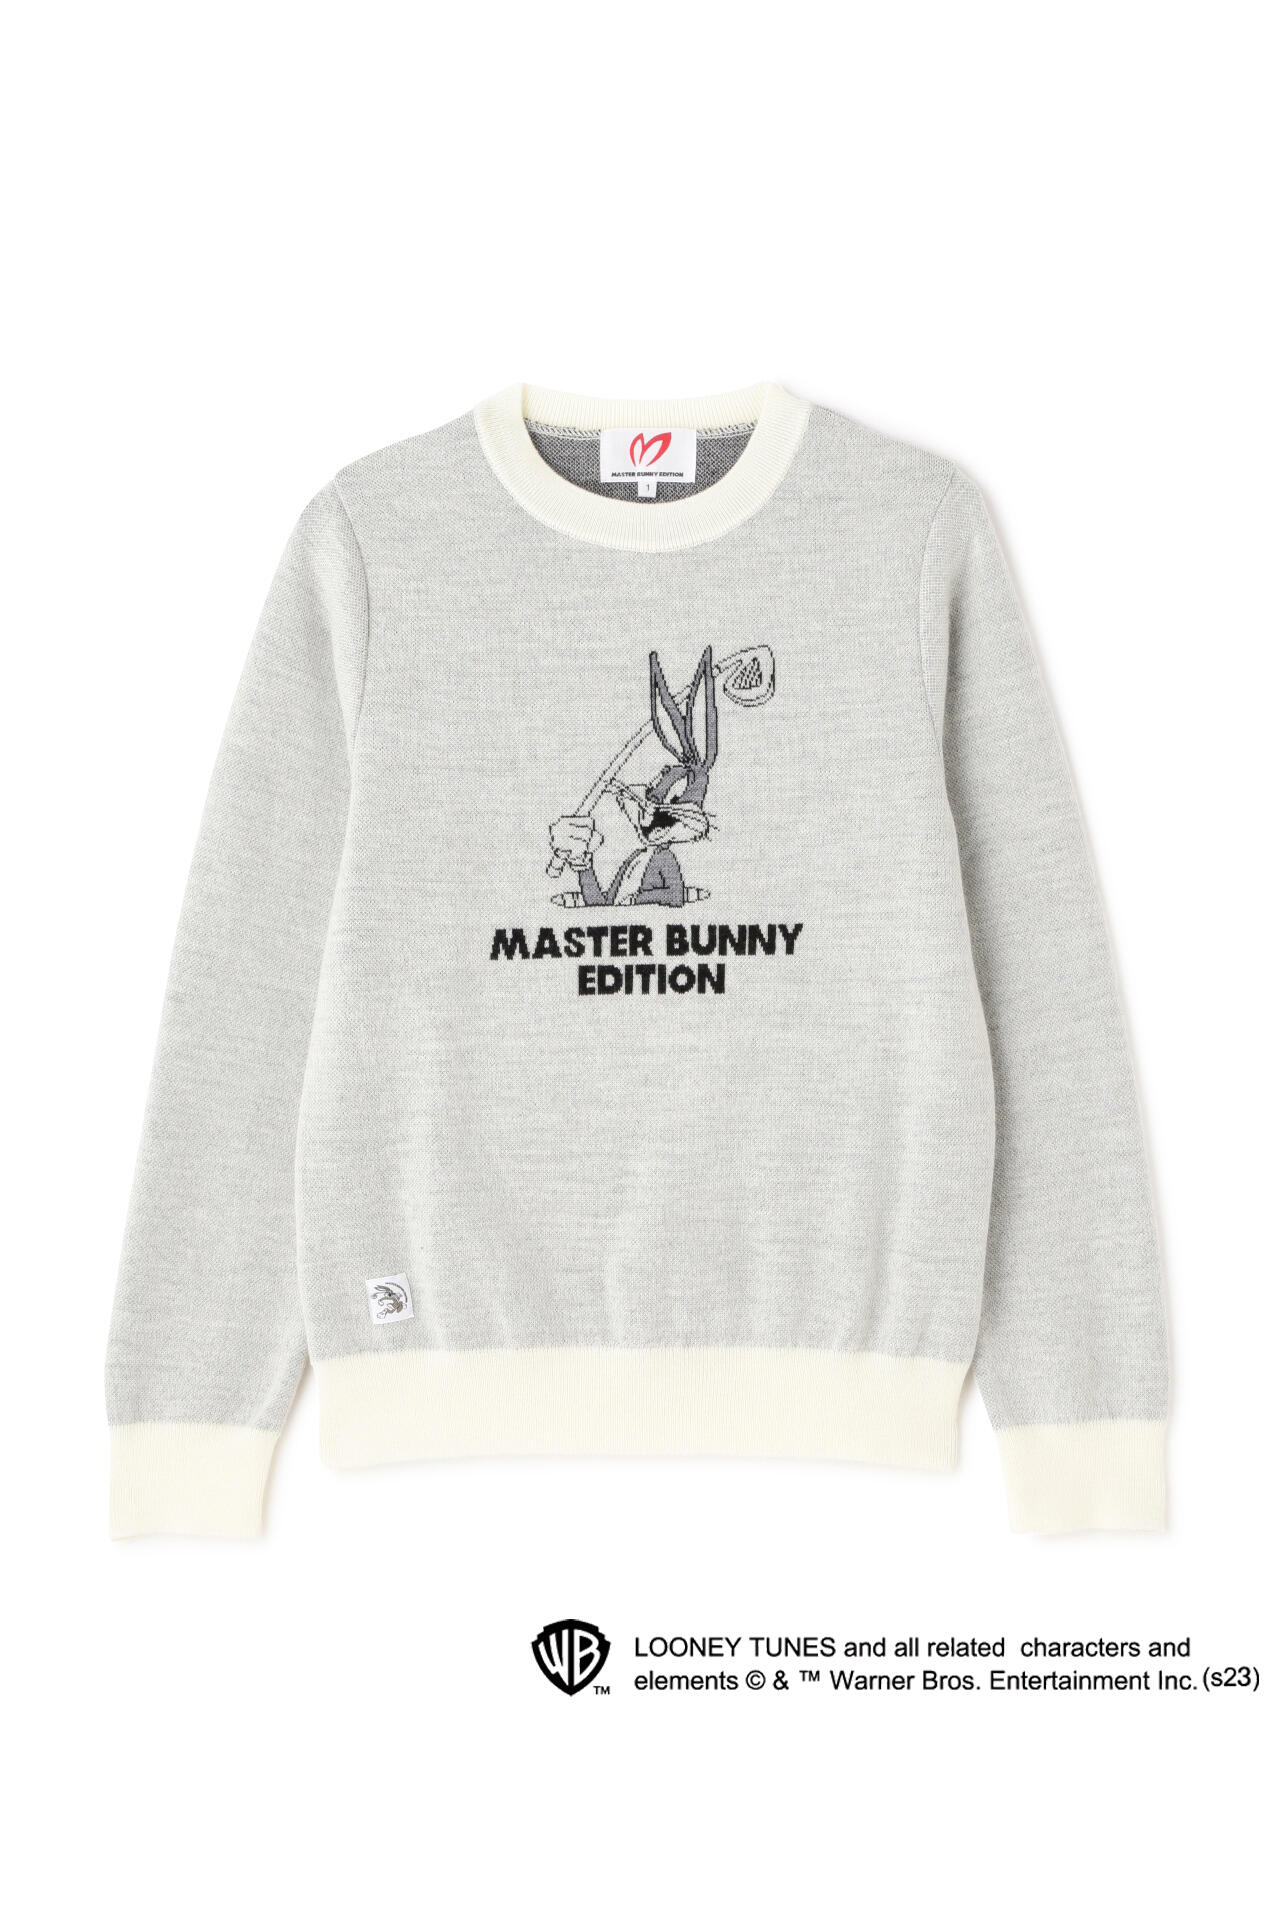 マスターバニーエディション】【Bugs Bunny×MASTER BUNNY EDITION】3色 